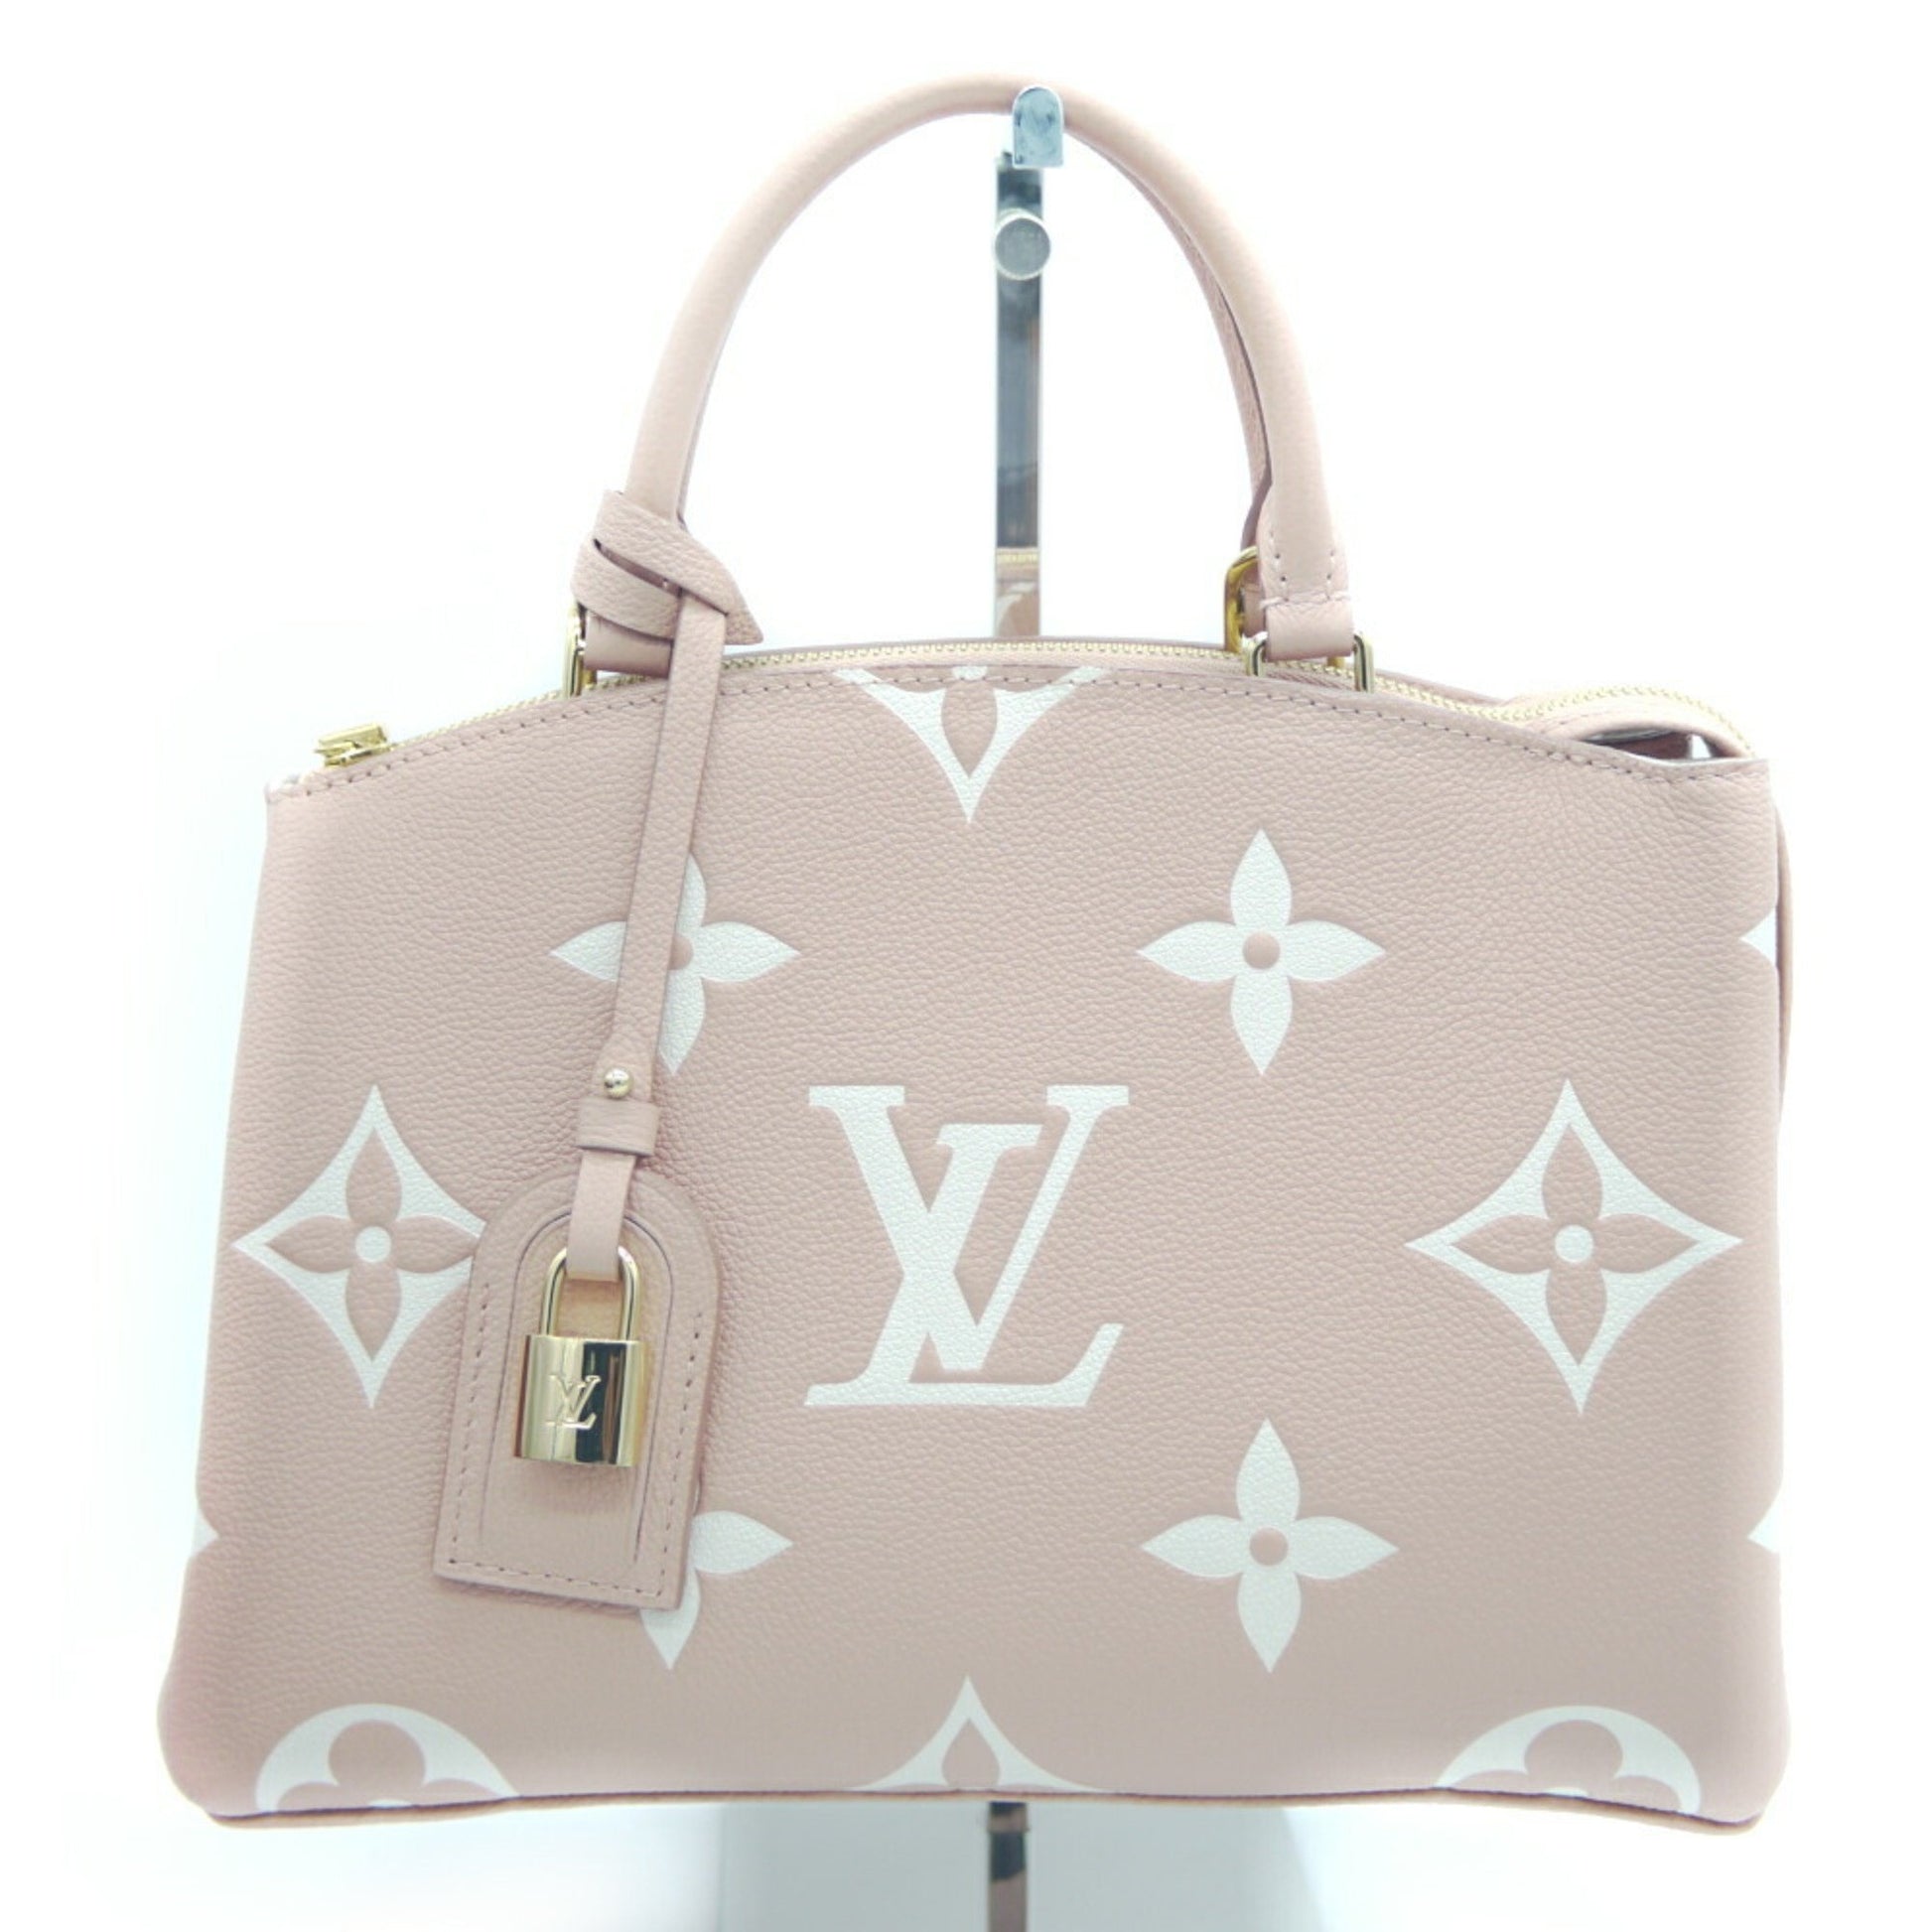 Louis Vuitton - Trianon PM Tote Bag - Bicolore Tourterelle Creme - Monogram Leather - Women - Luxury